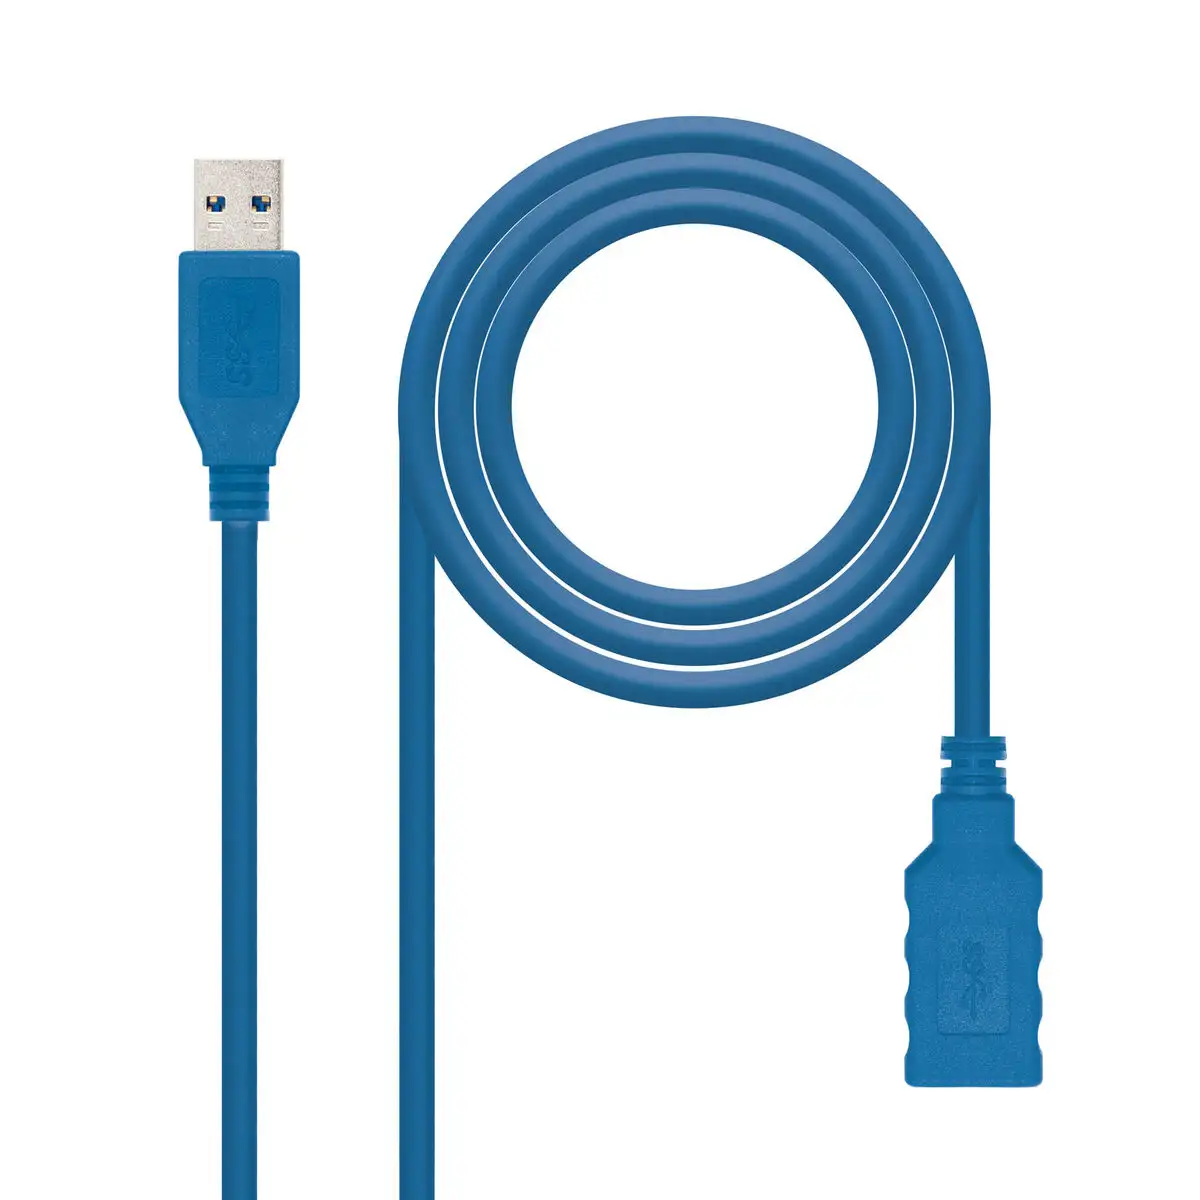 Câble de rallonge 1m USB A 3.0 - connecteur USB A sur port USB A